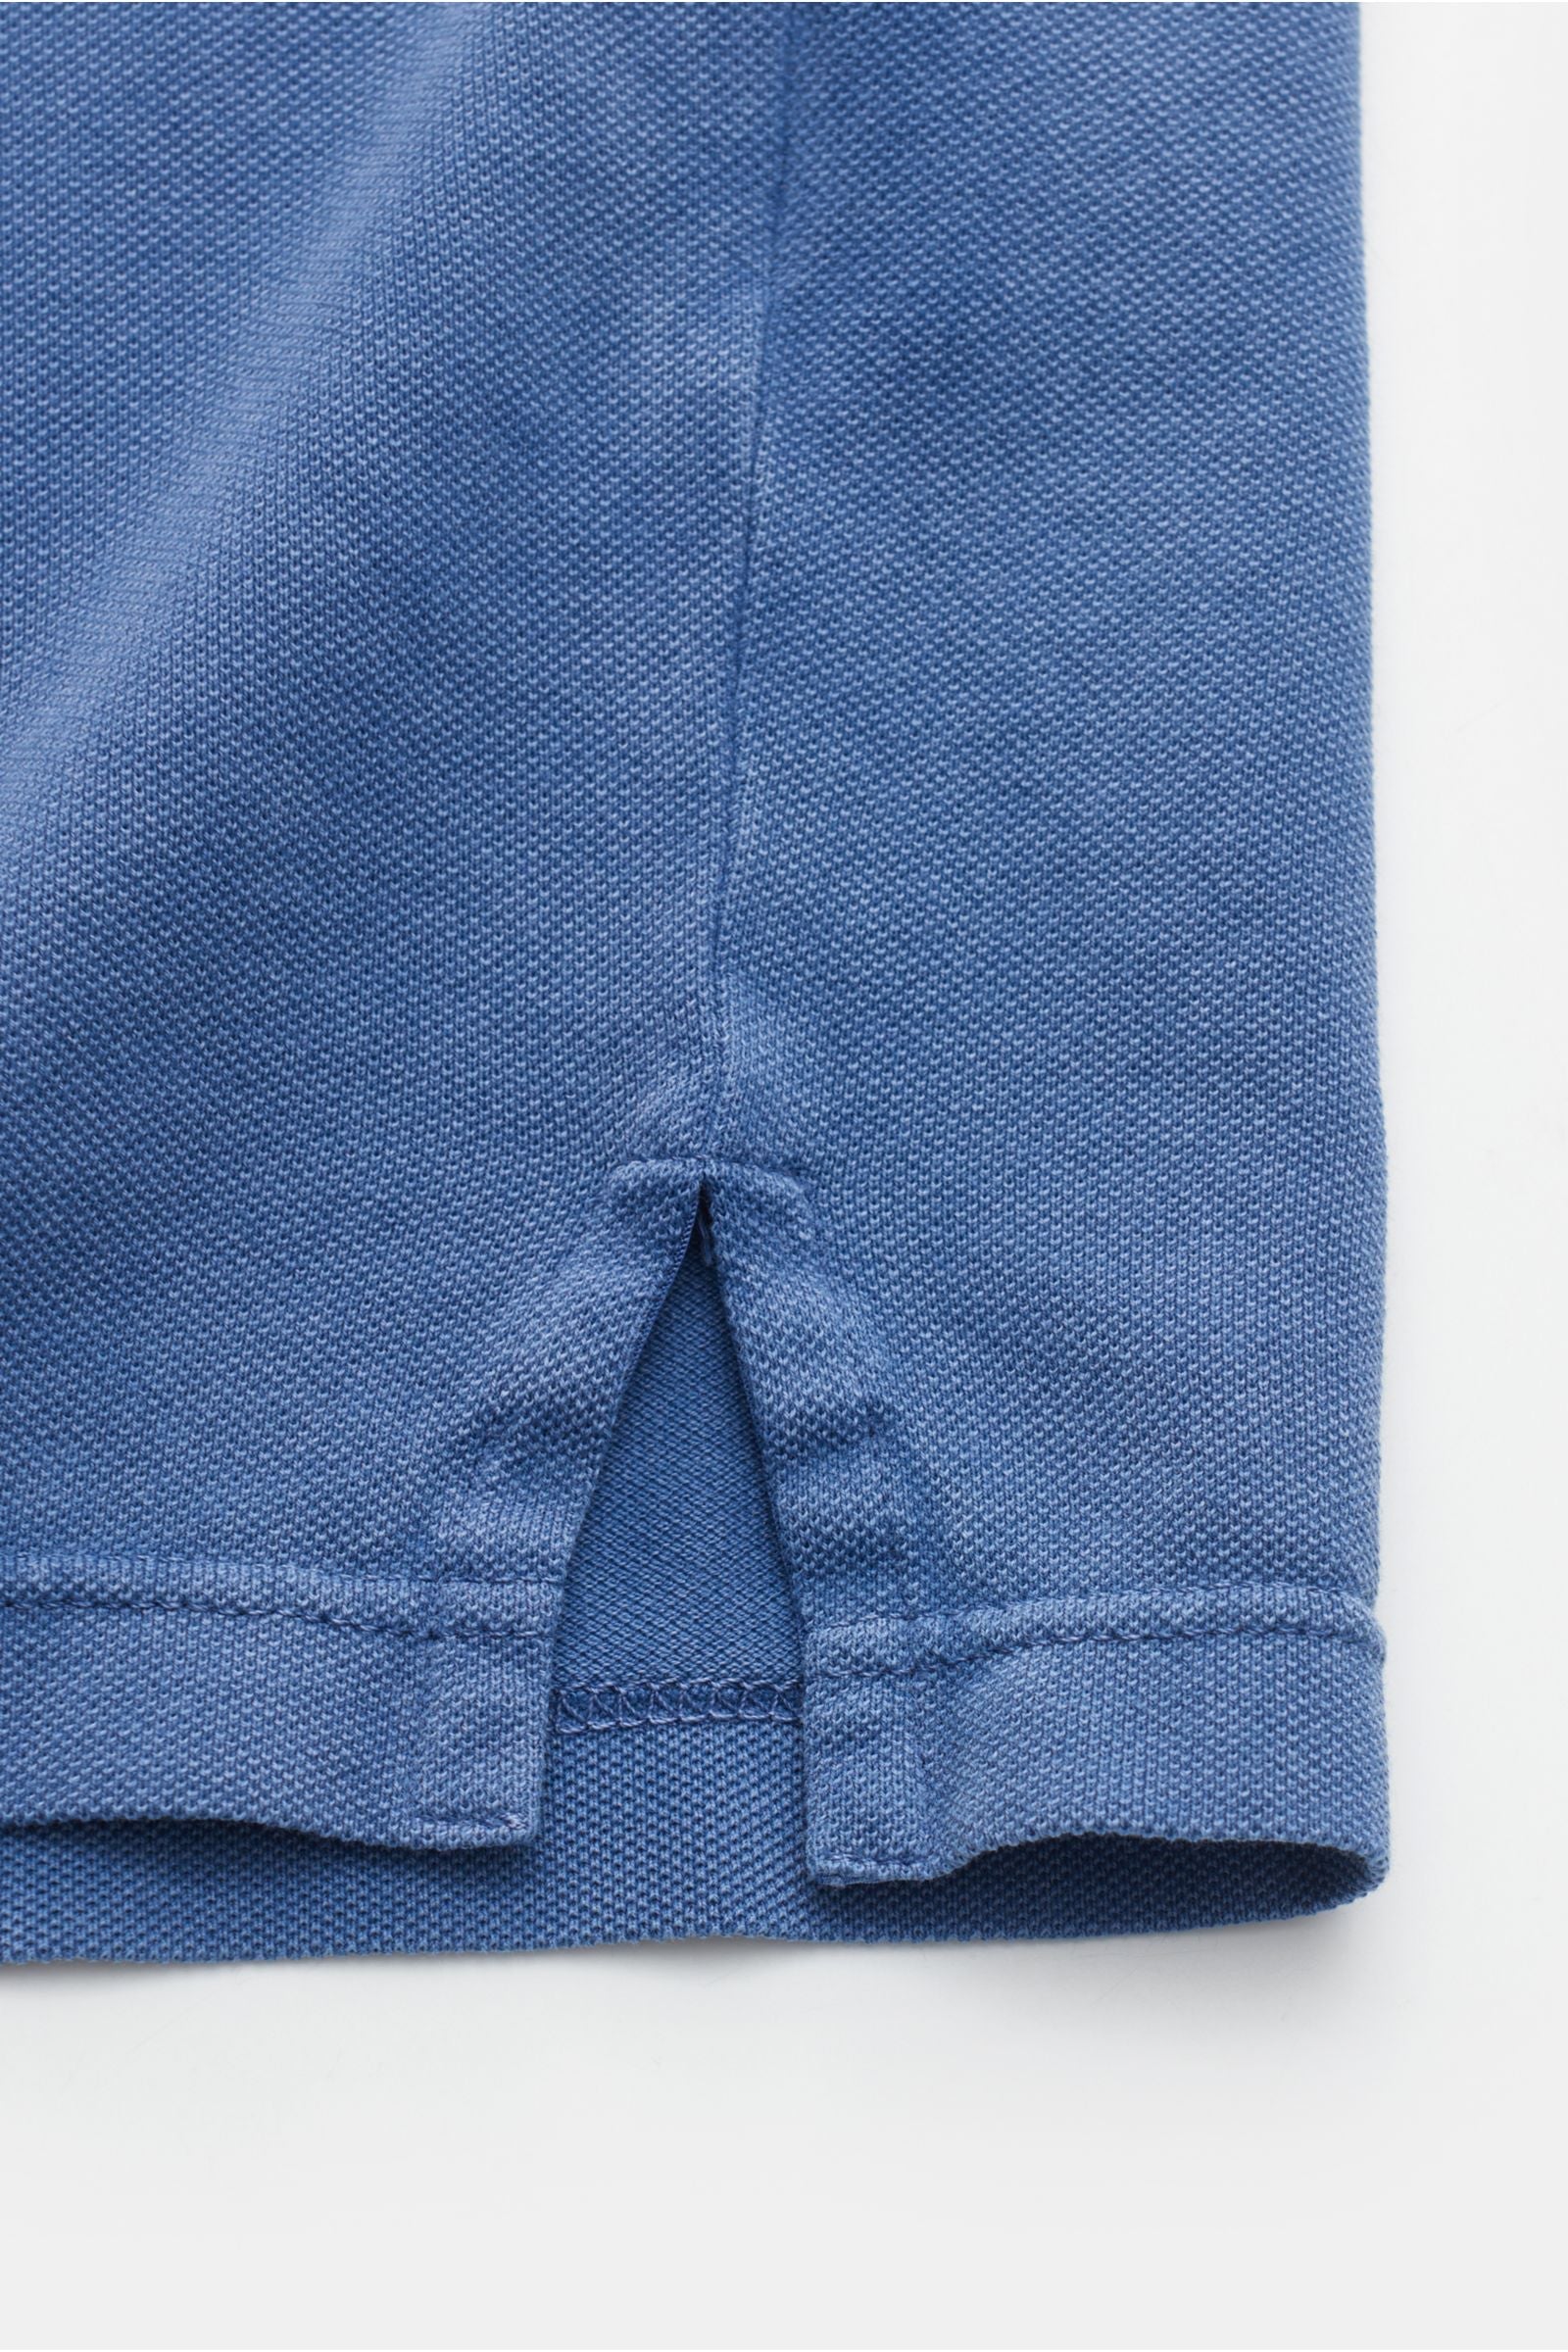 Fedeli Fedeli Polo Shirt - Raf blauw